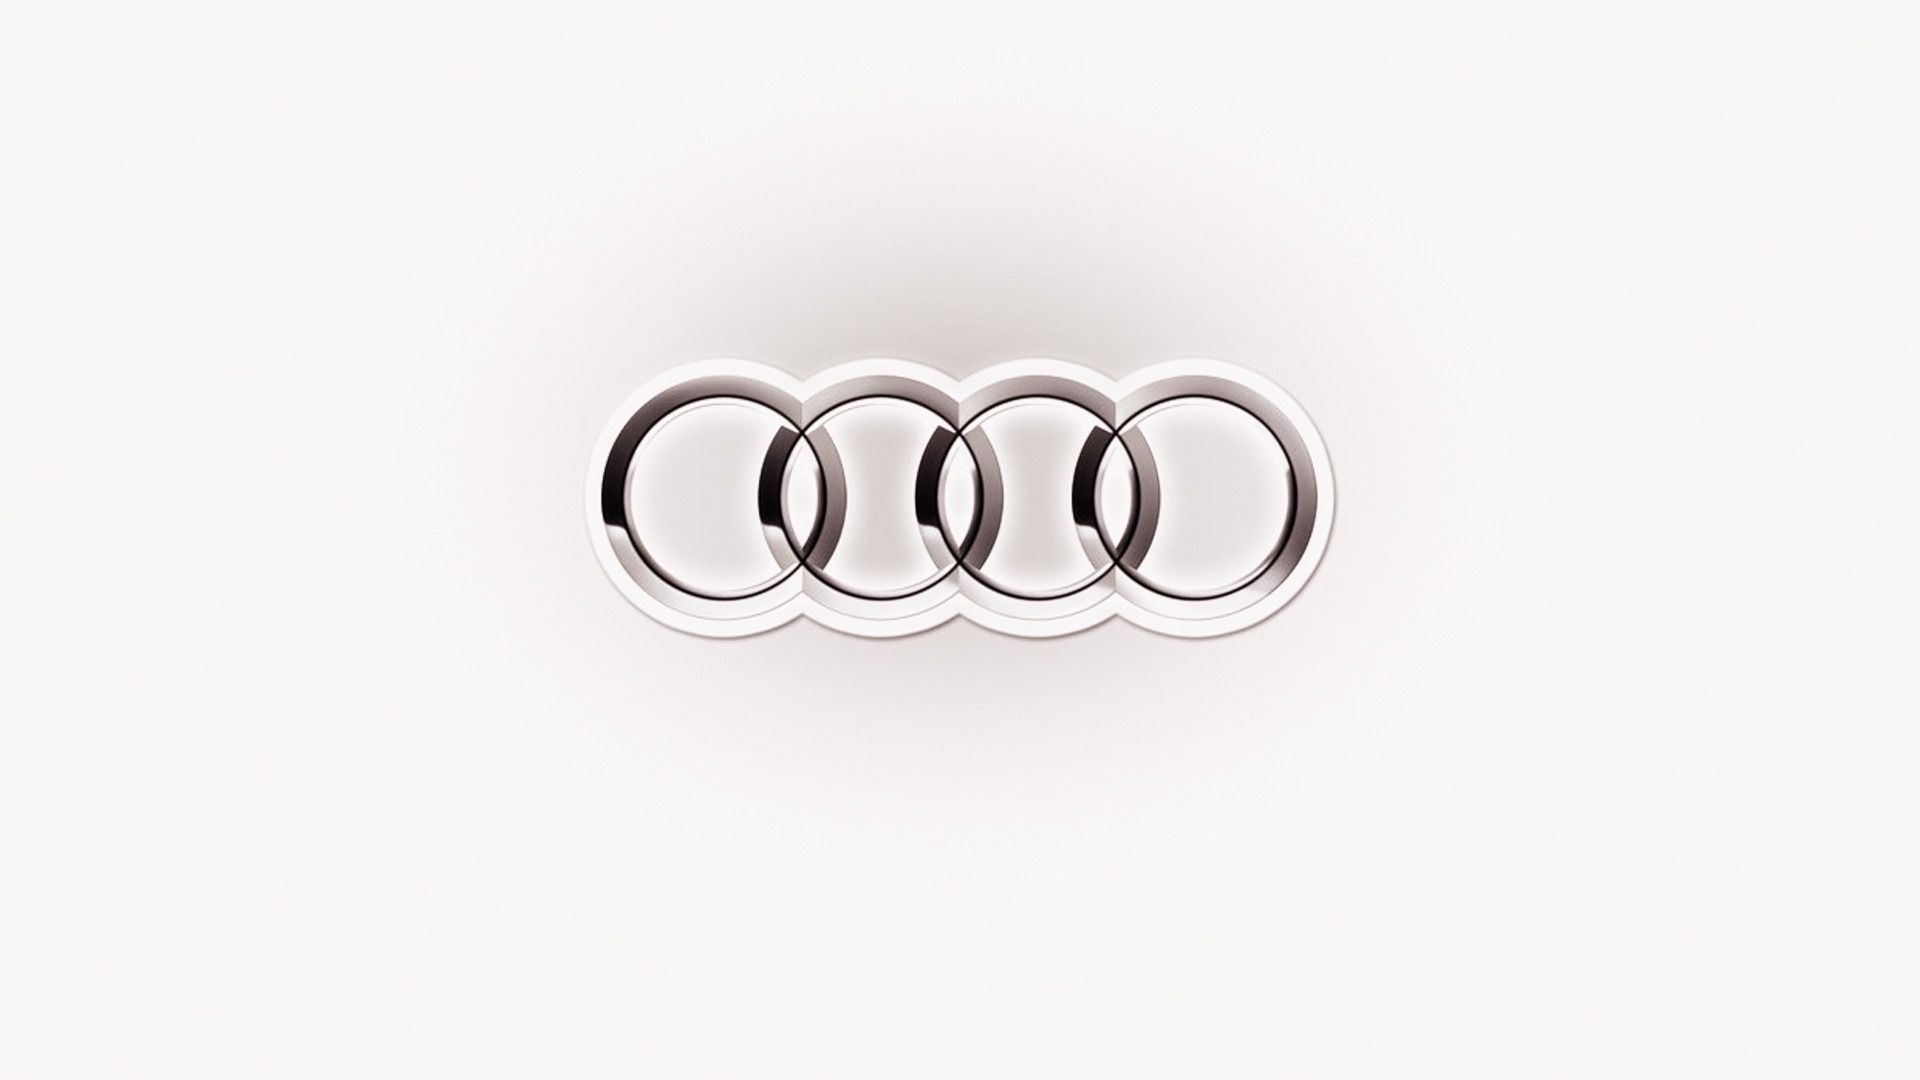 HD Audi Logo Wallpaper